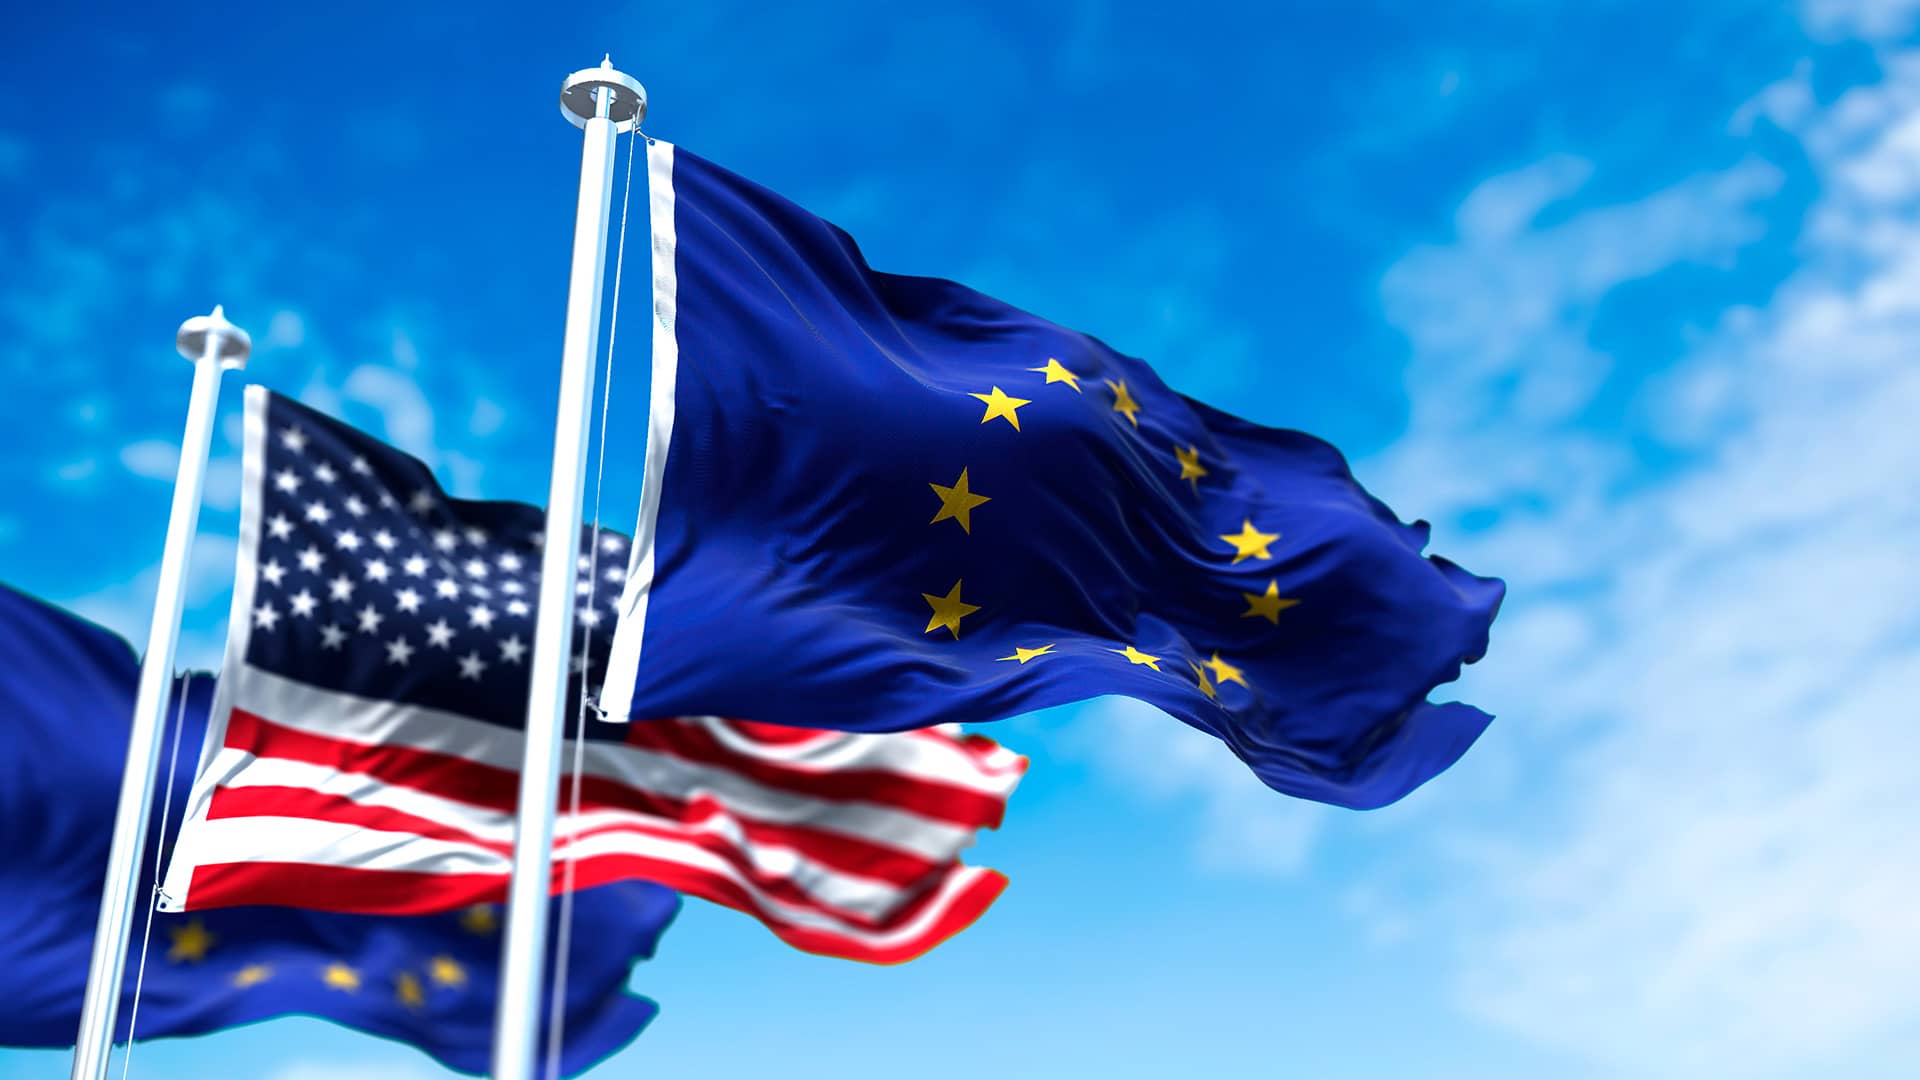 Adigital valora positivamente el principio de acuerdo sobre las transferencias internacionales de datos entre la UE y Estados Unidos